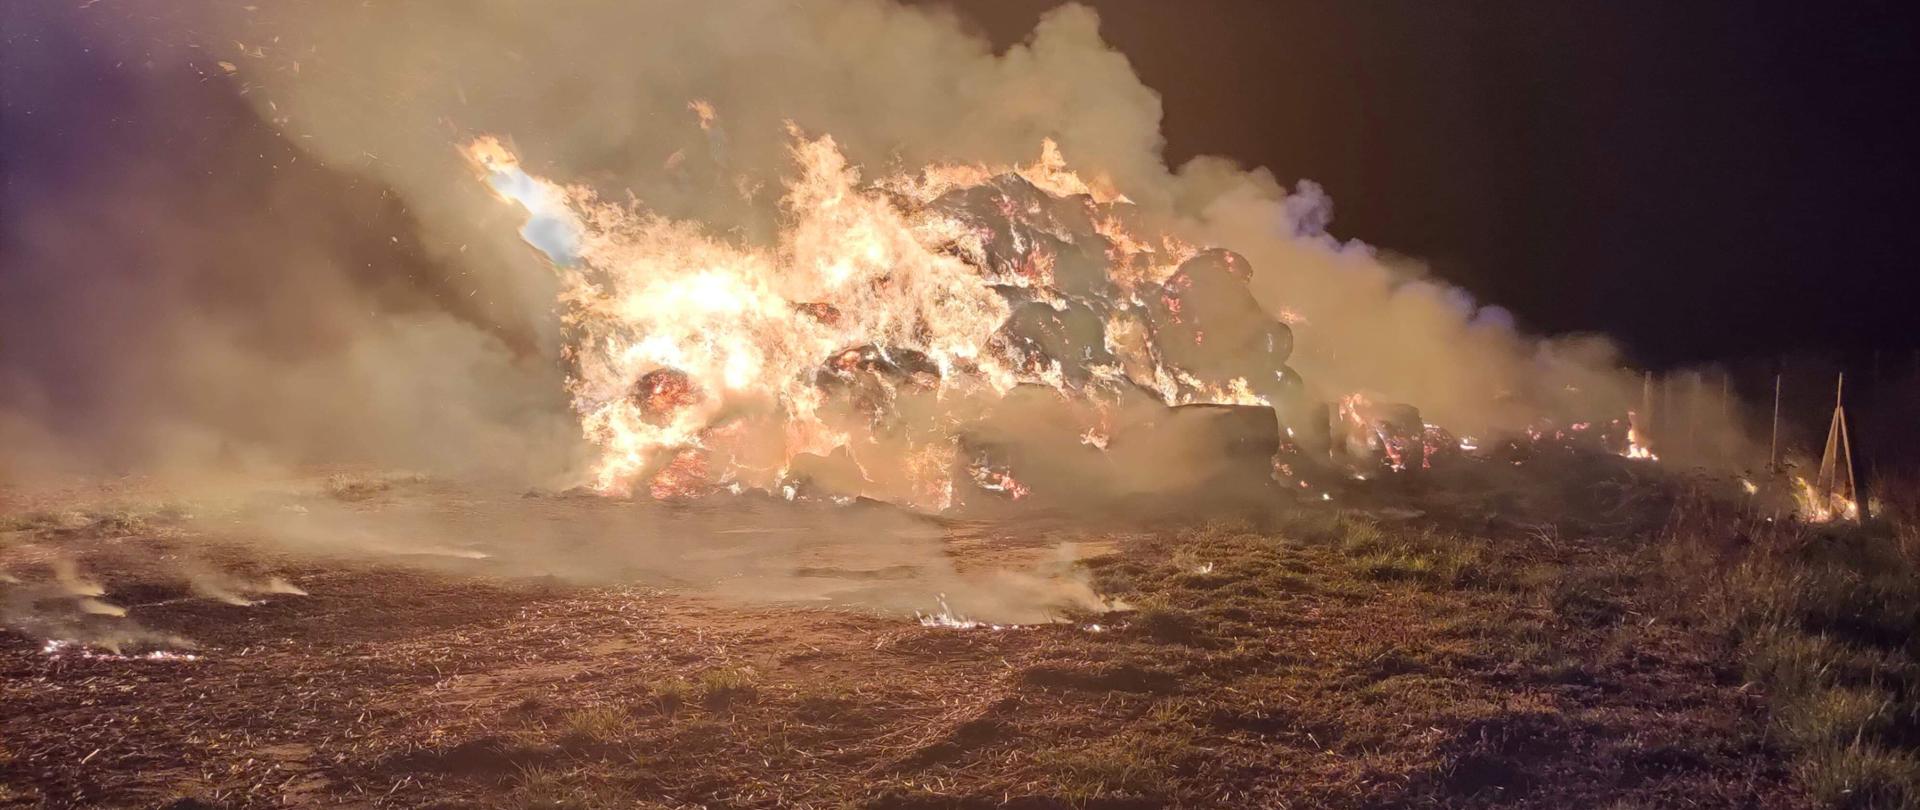 Zdjęcie przedstawia w całości objęty pożarem stóg siana, nad którym unosi się szary dym. Objęte pożarem baloty siana znajdują się na trawiastym podłożu, gdzie po prawej stronie zaobserwować można przebiegające ogrodzenie. Pożar ma miejsce w porze nocnej. 